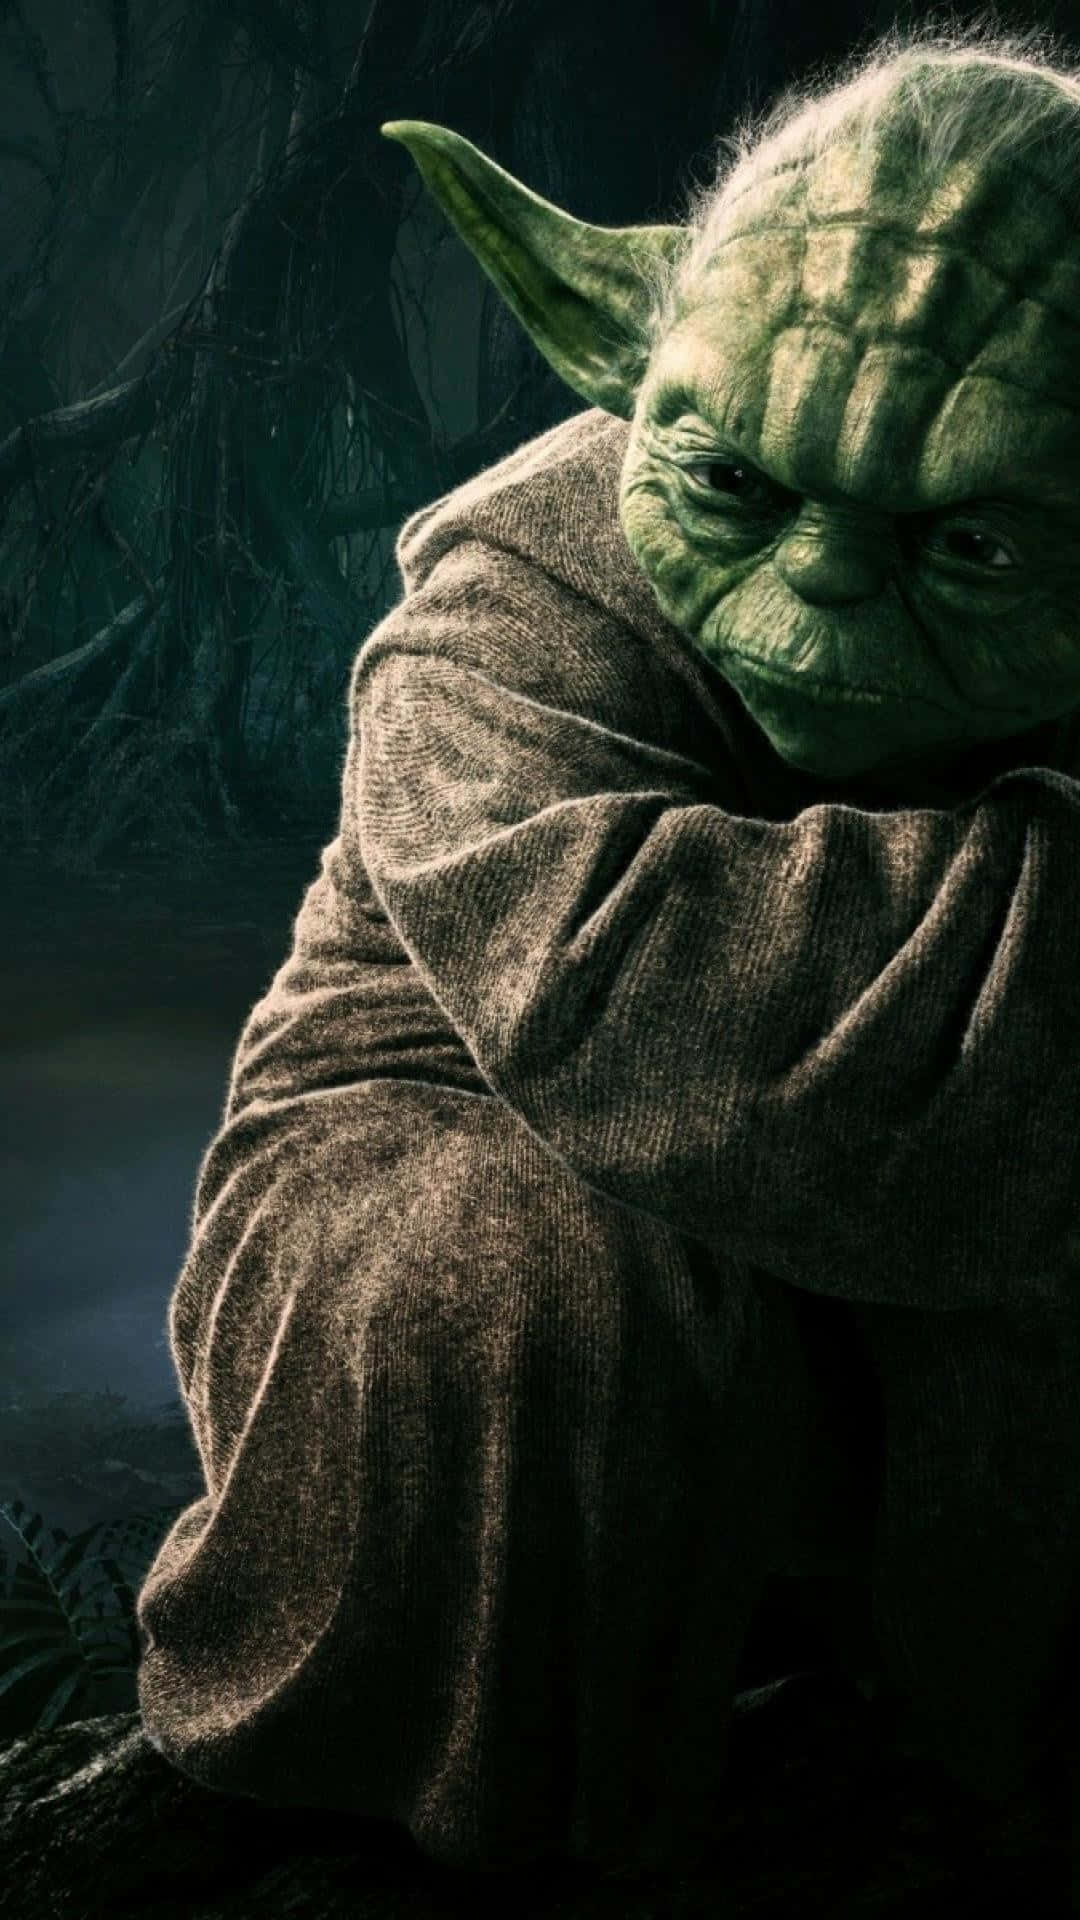 Fondode Pantalla De Star Wars Maestro Jedi Yoda